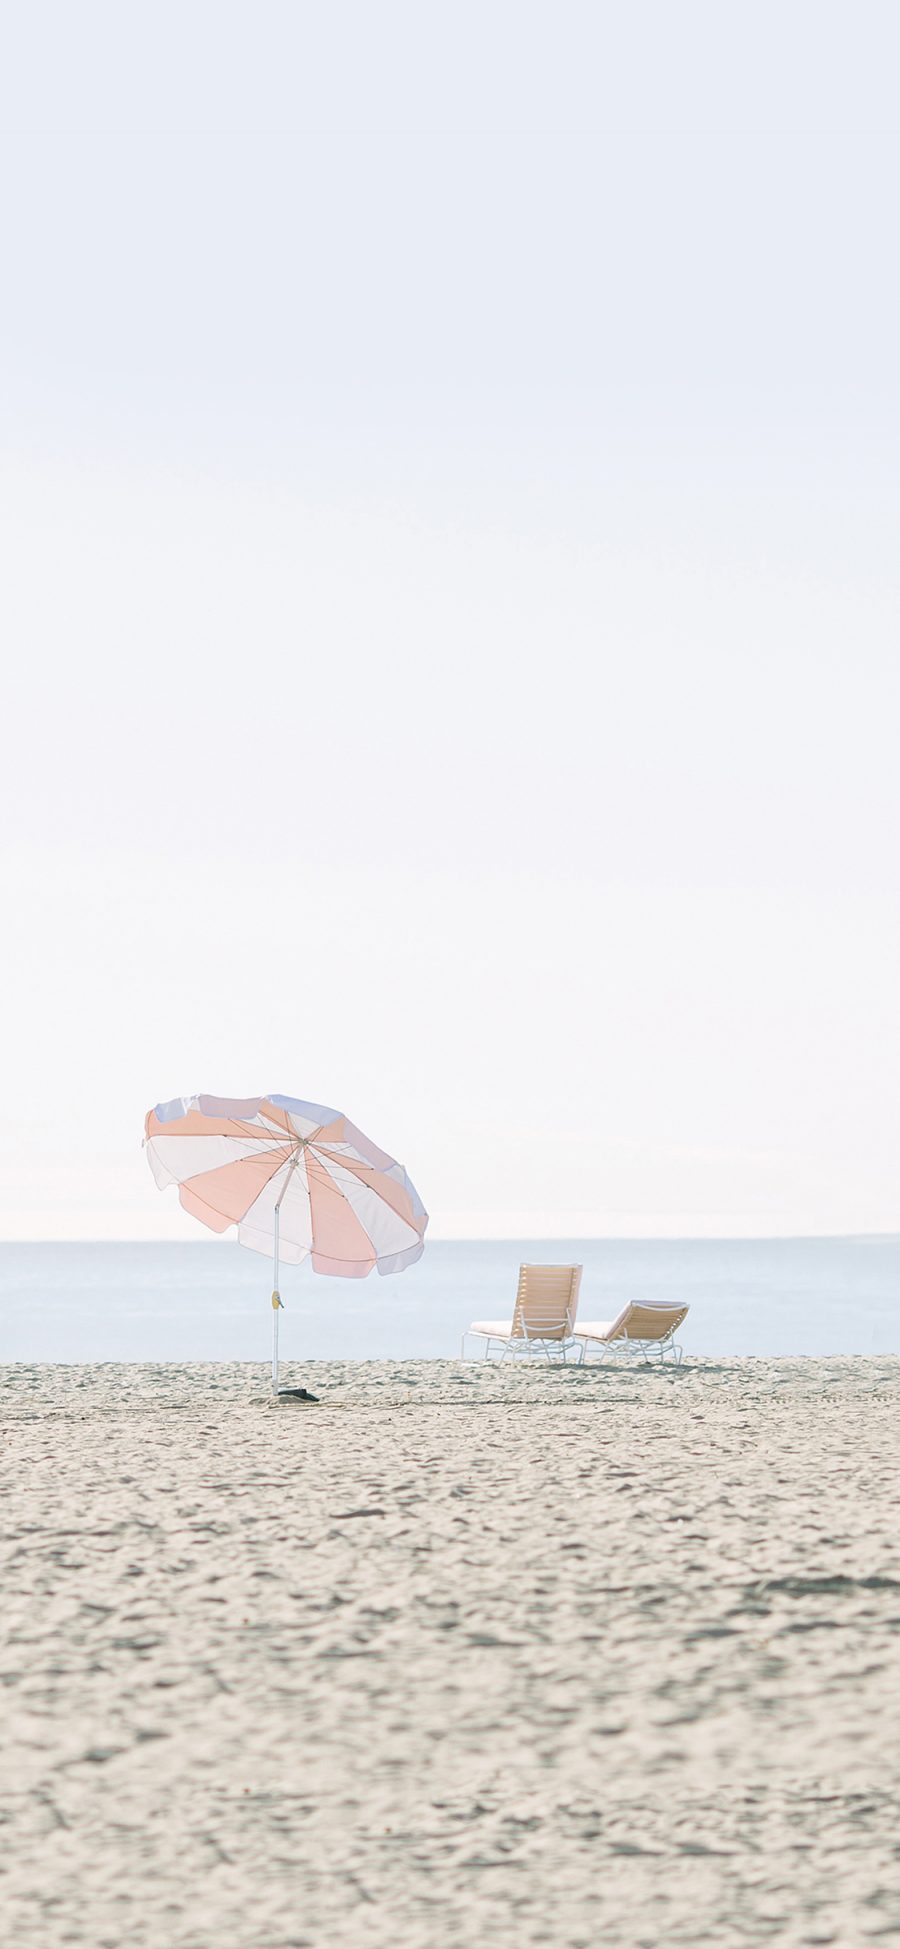 [2436×1125]沙滩 清新 阳光浴 大海 伞 苹果手机壁纸图片